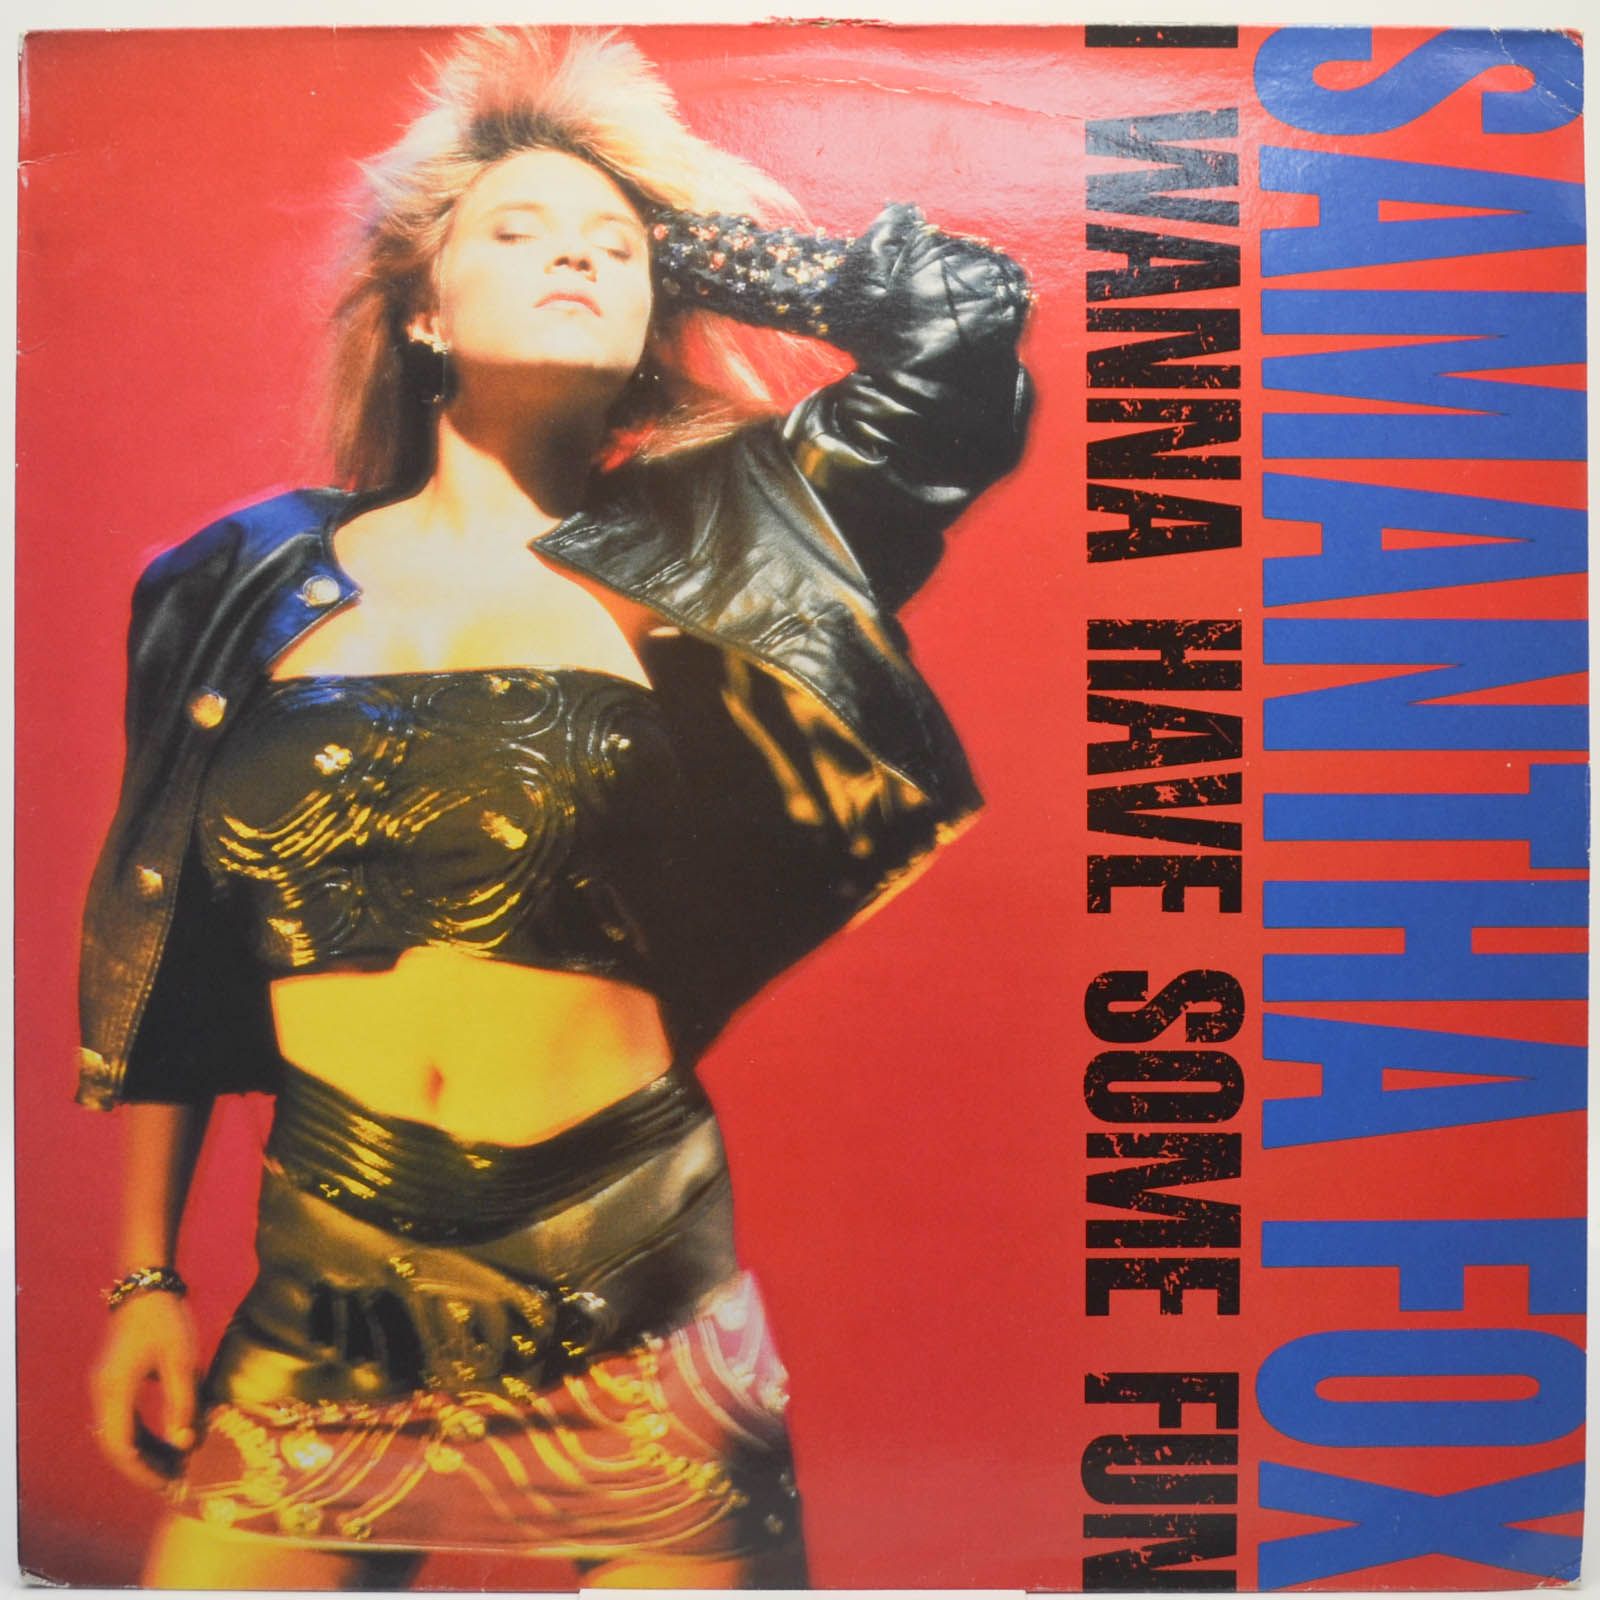 Samantha Fox — I Wanna Have Some Fun (UK), 1988